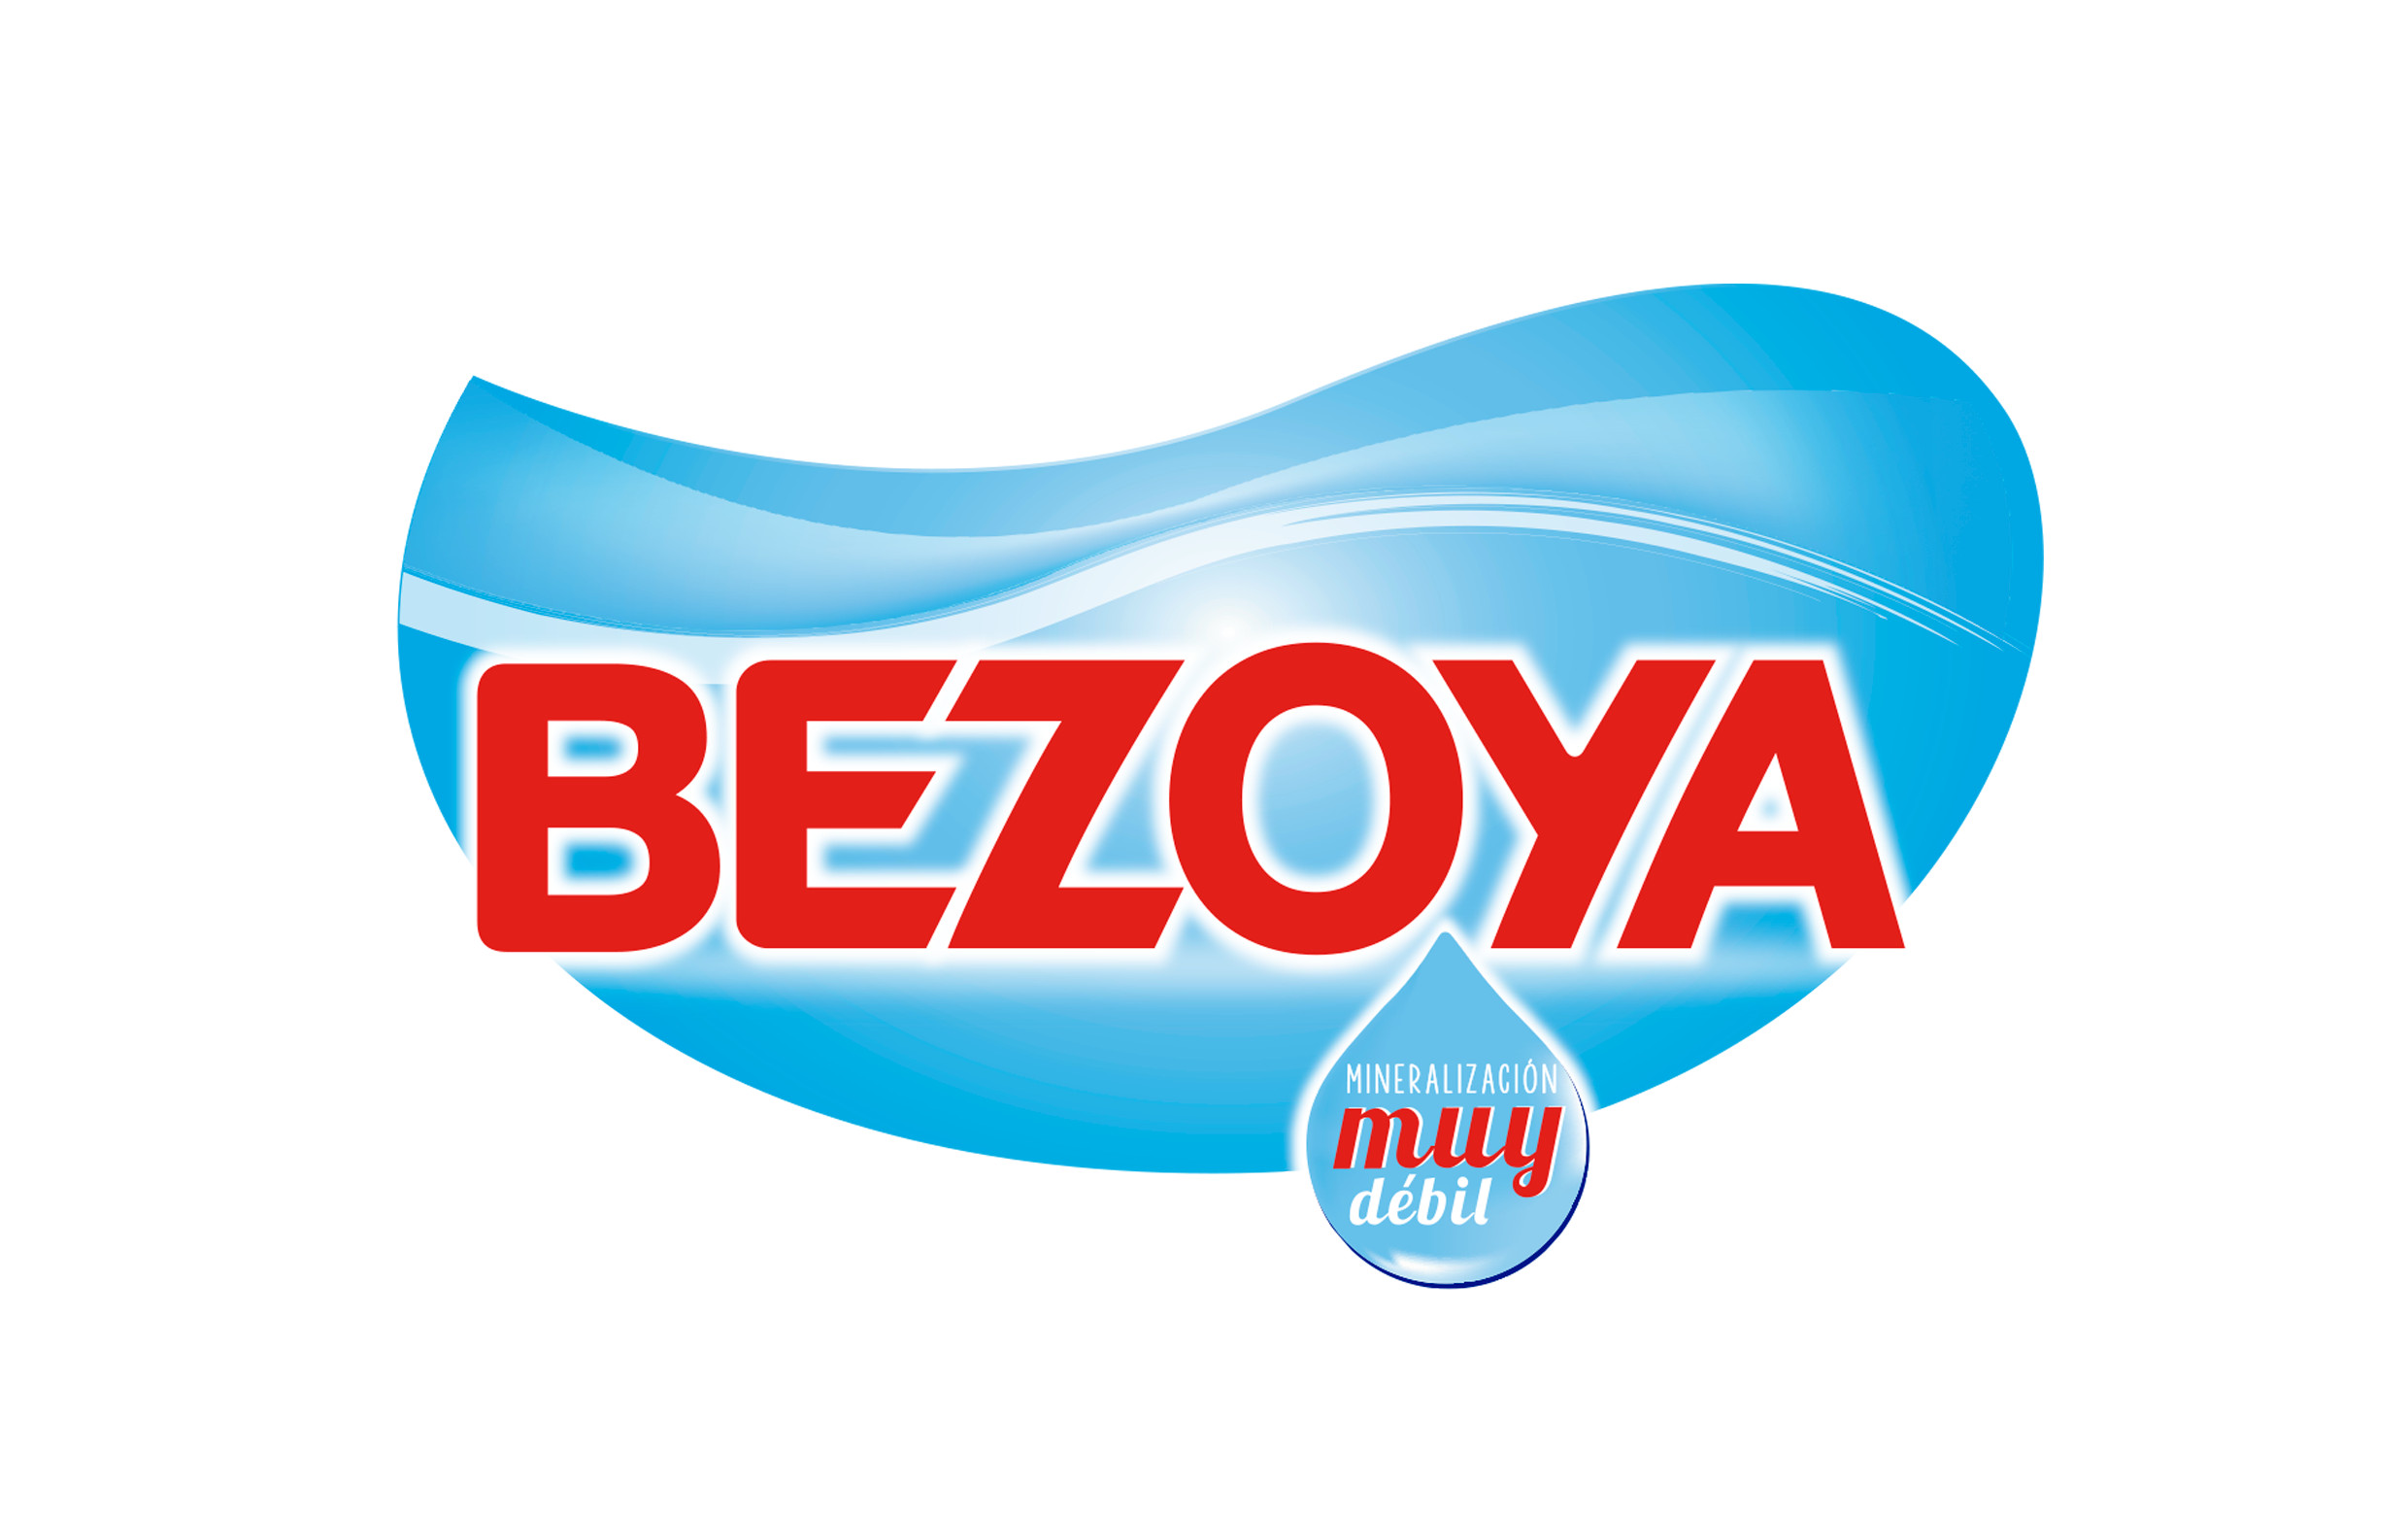 logo bezoya